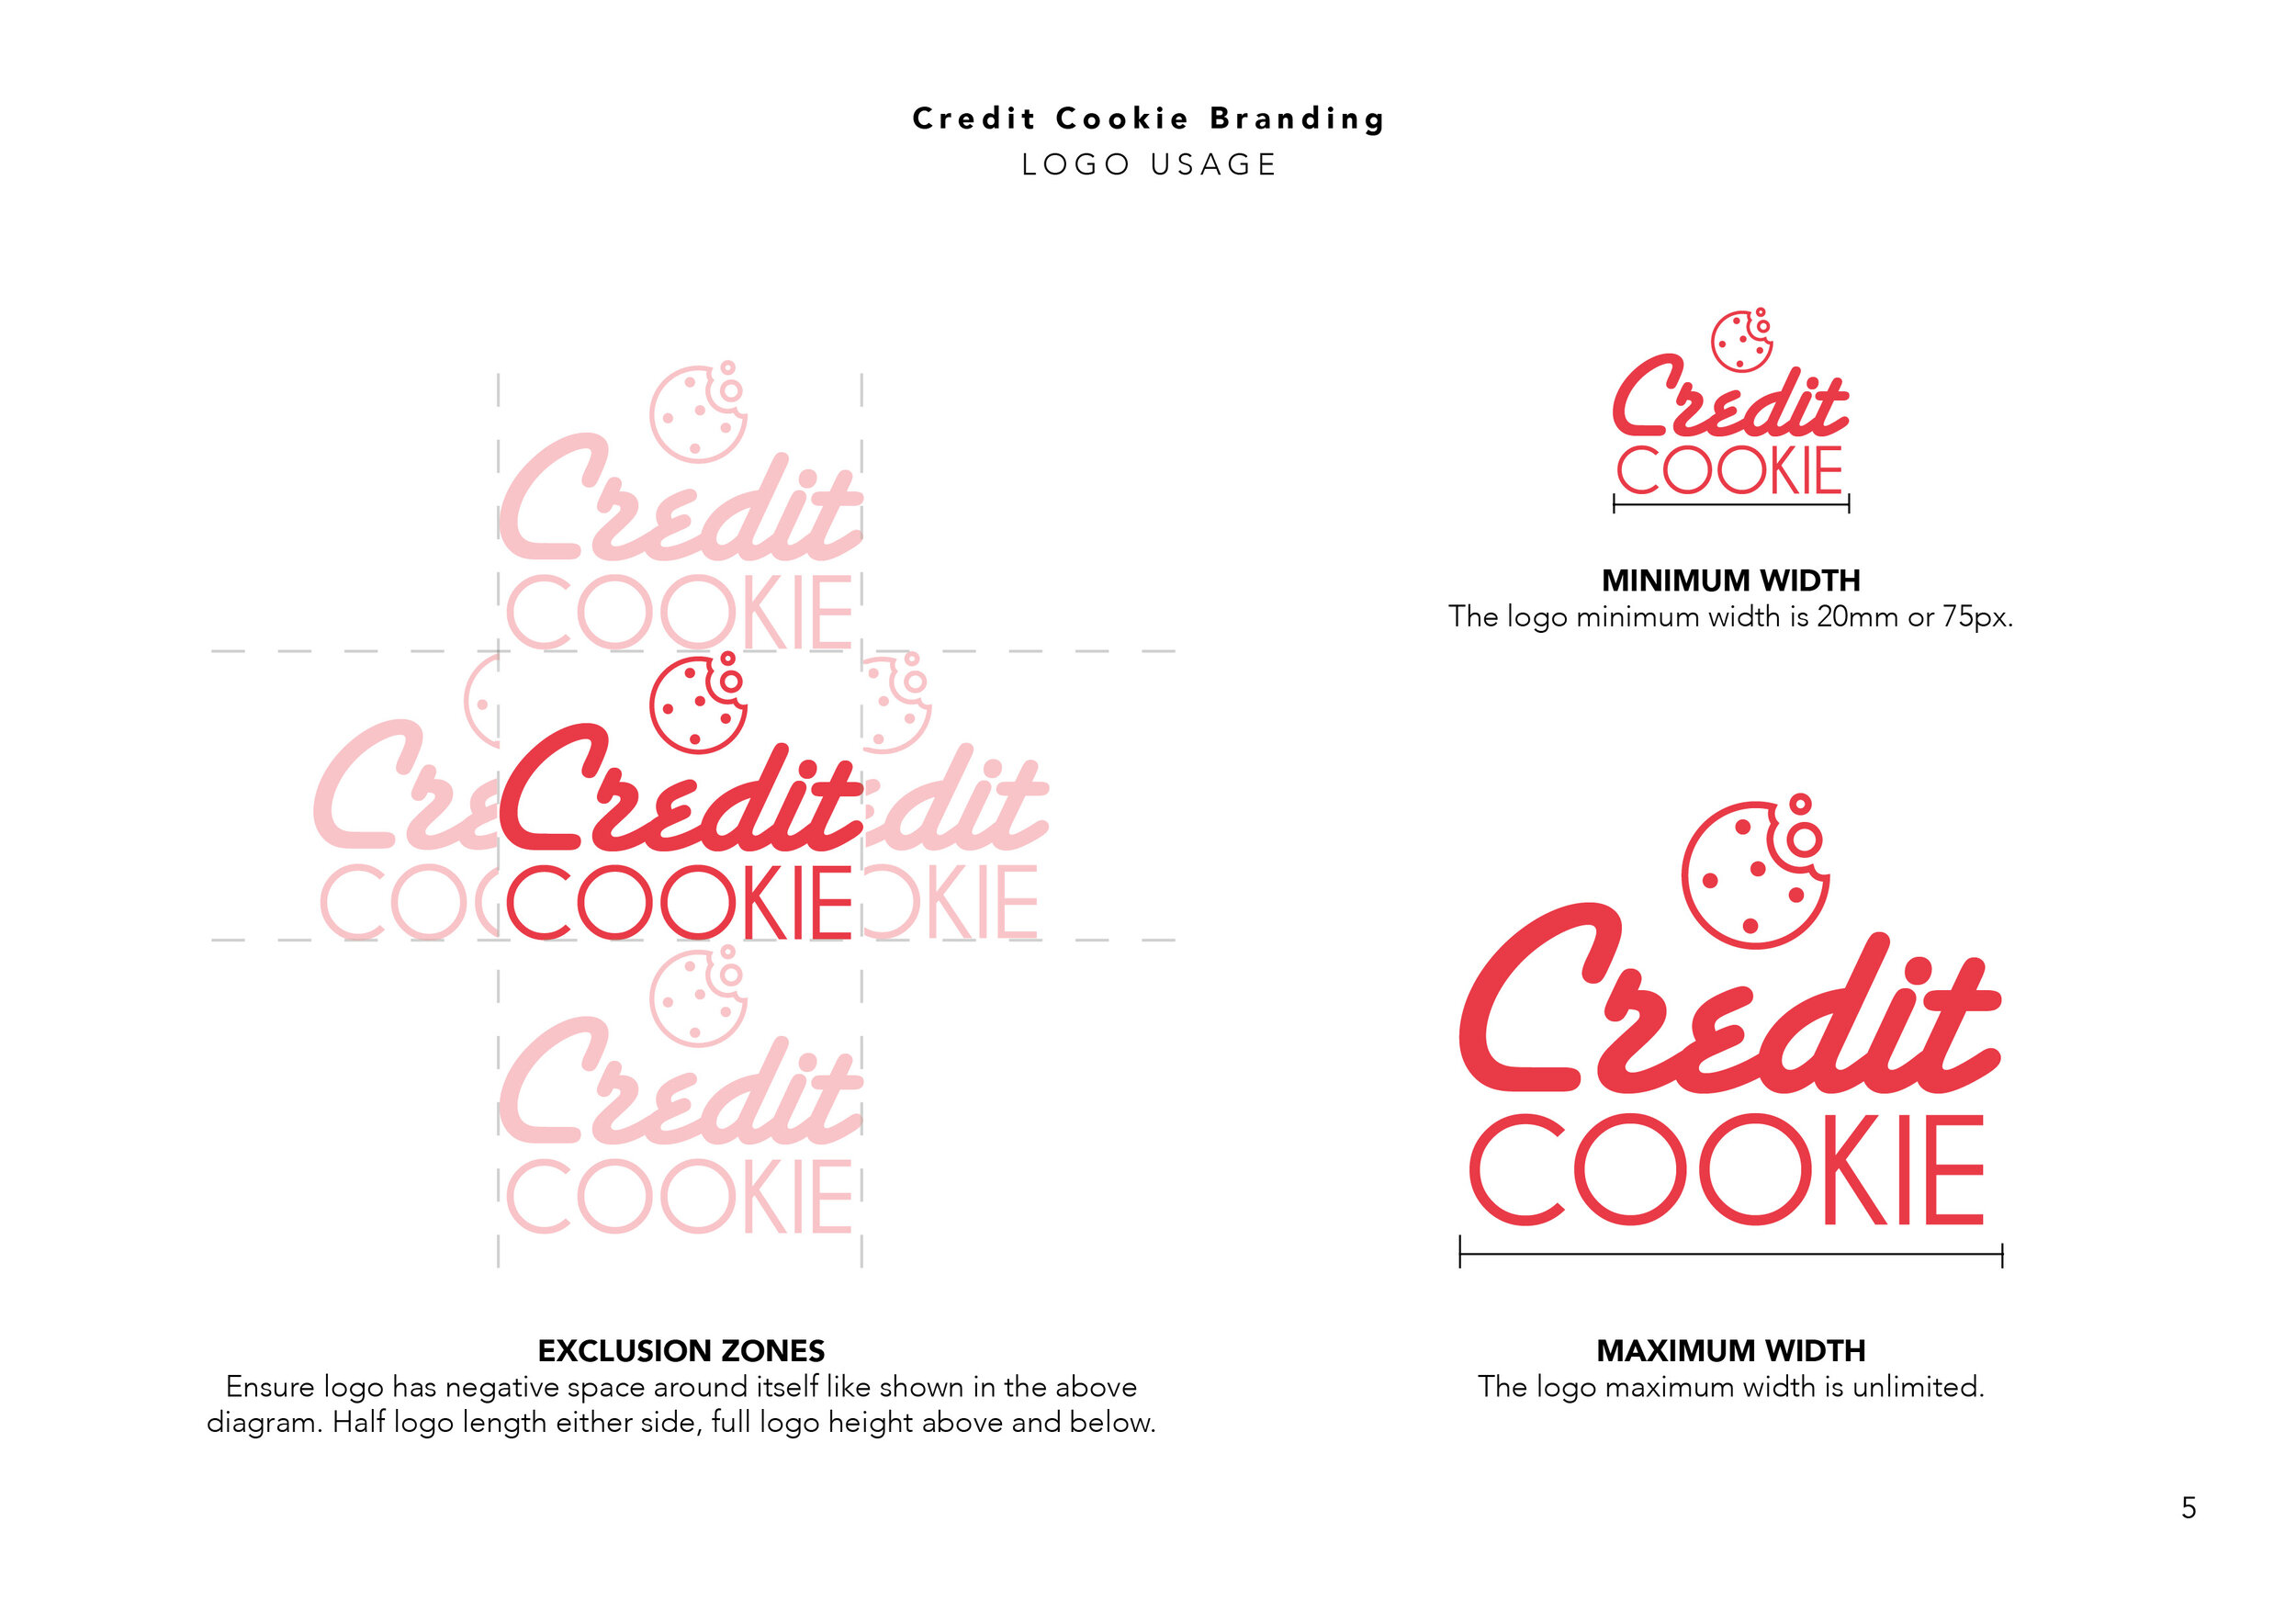 Credit Cookie Branding Guide6.jpg